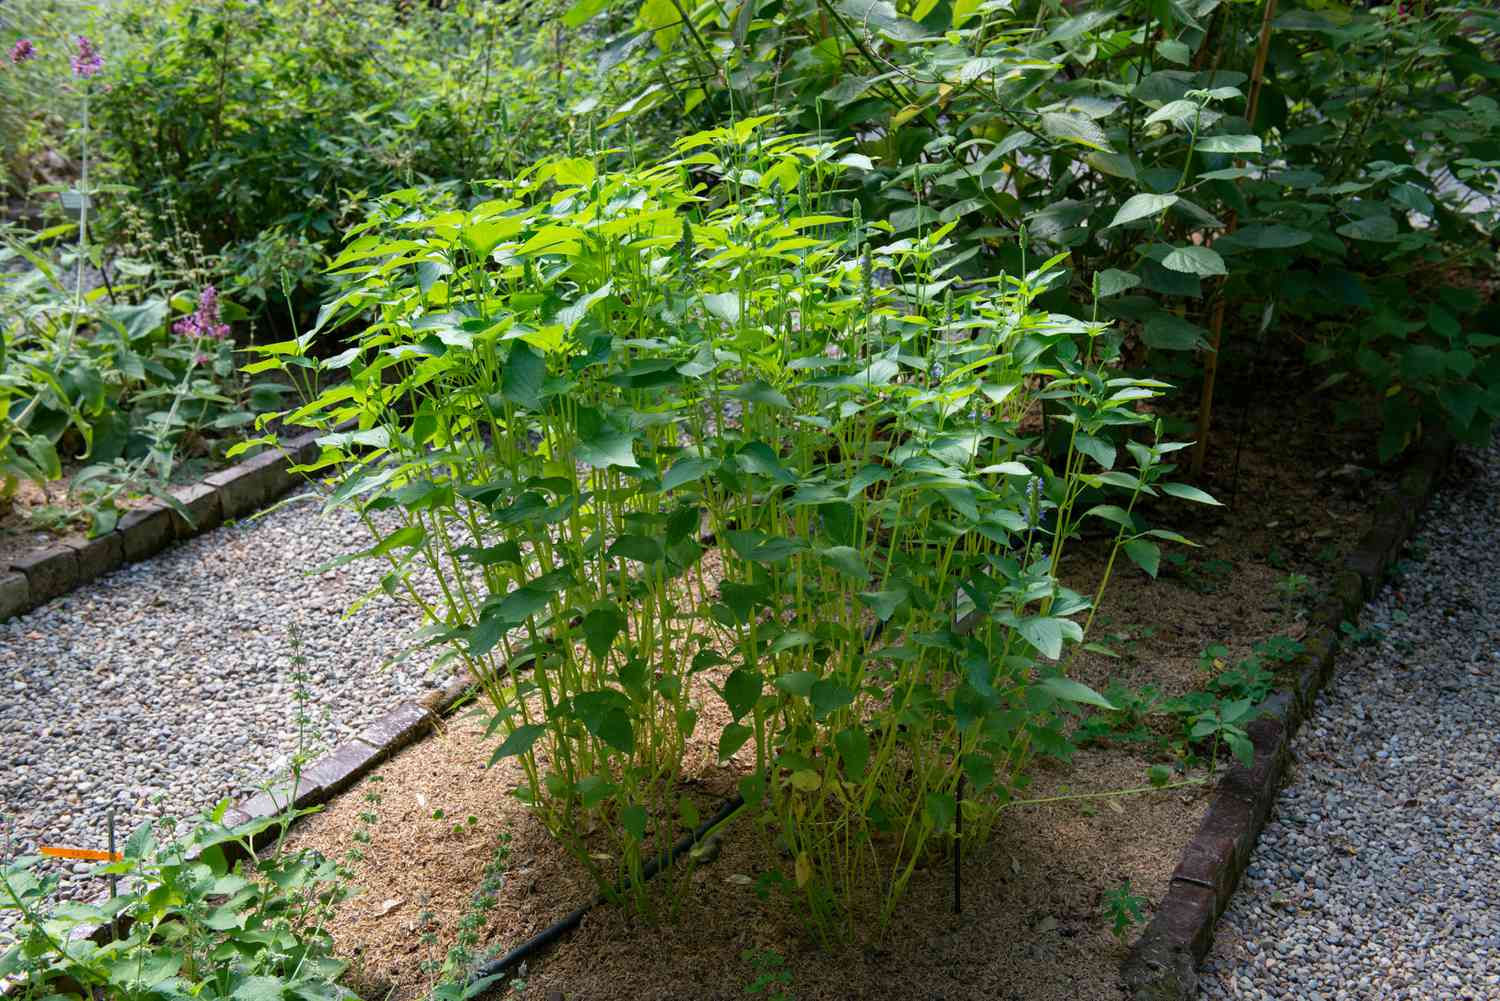 Plantas de chía creciendo en el jardín como tallos altos y delgados